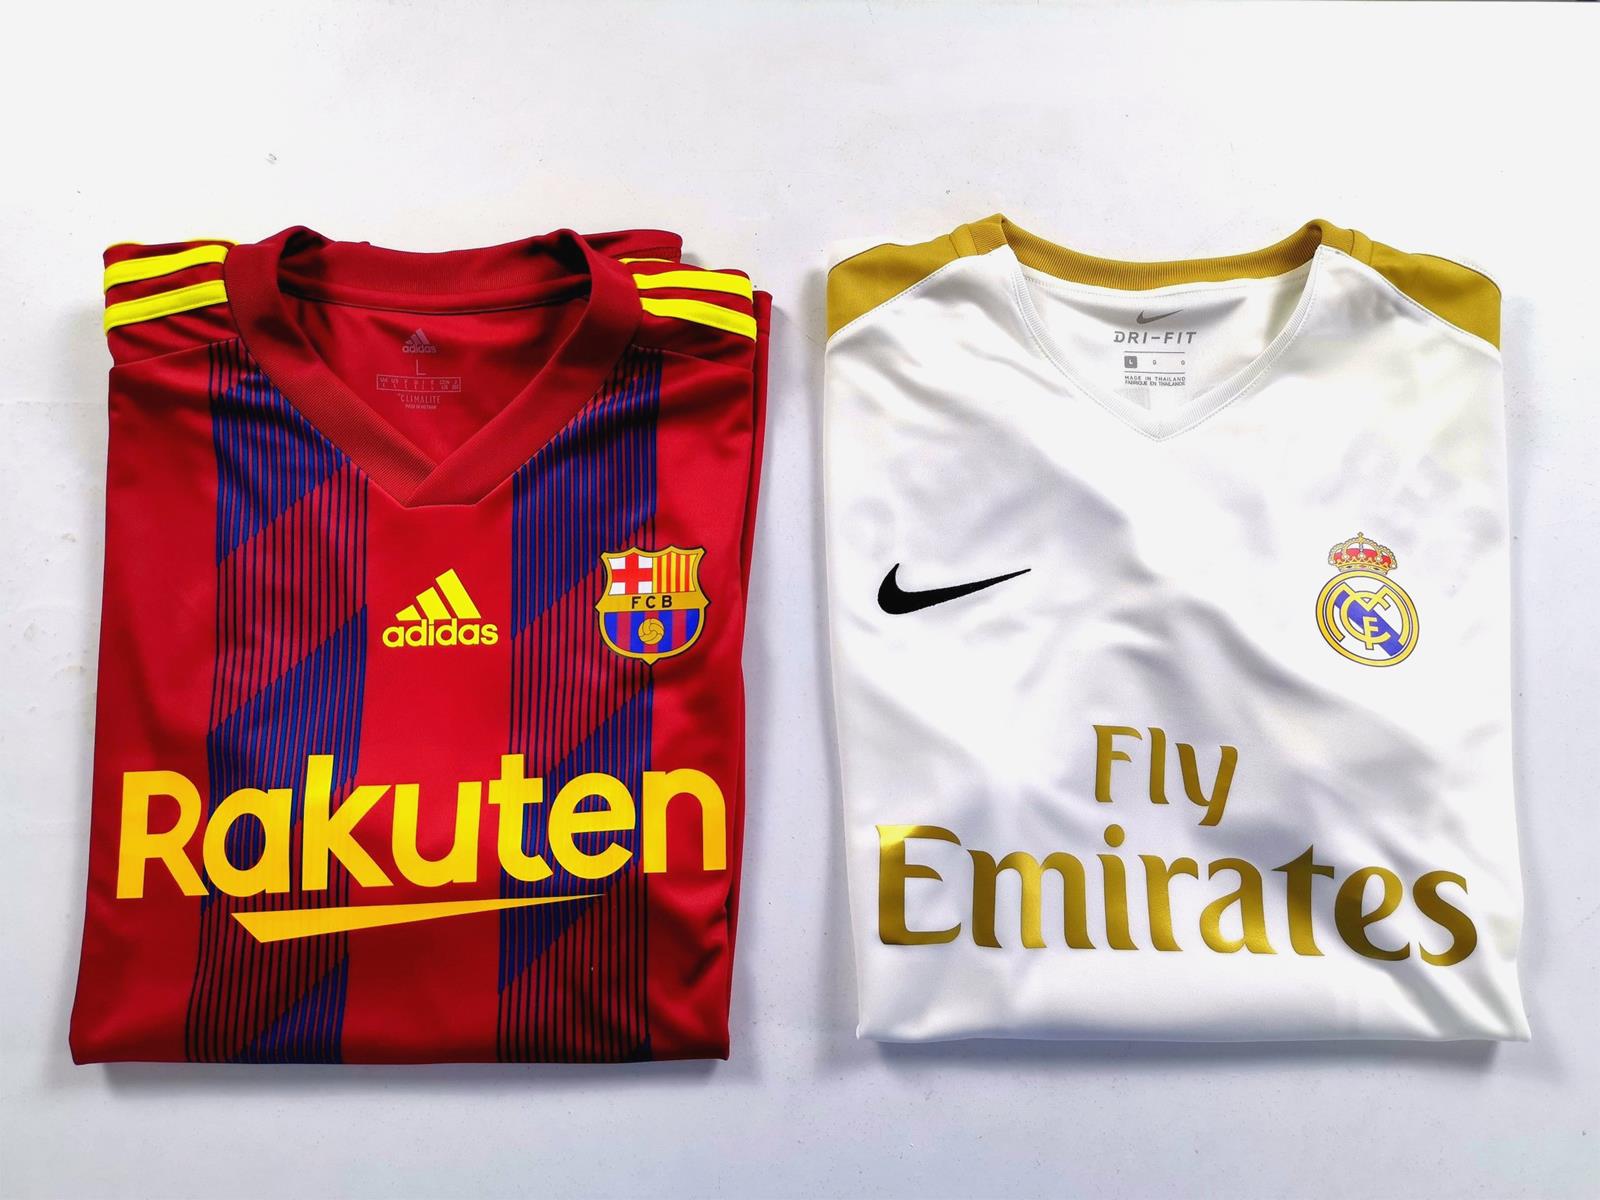 Adidas FC Barcelona & Nike Real Madrid 20-21 Kits "Revealed" - Spanish